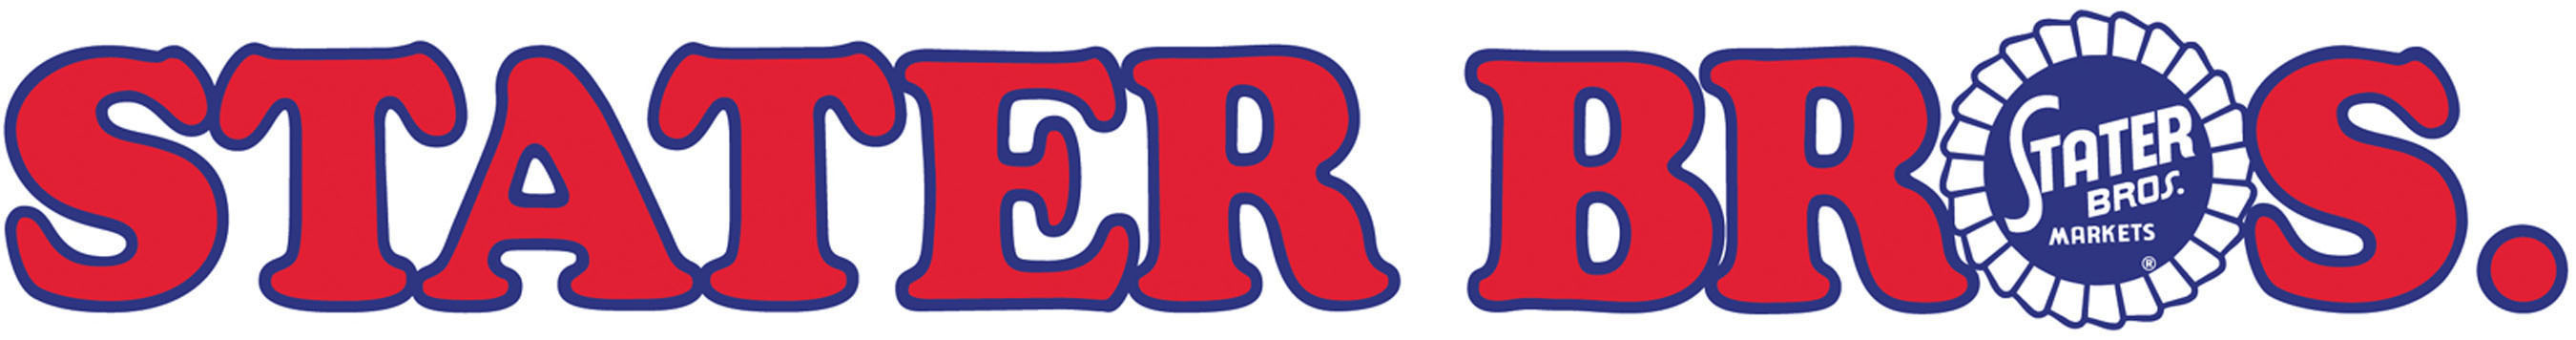 Stater Bros. Supermarkets logo.